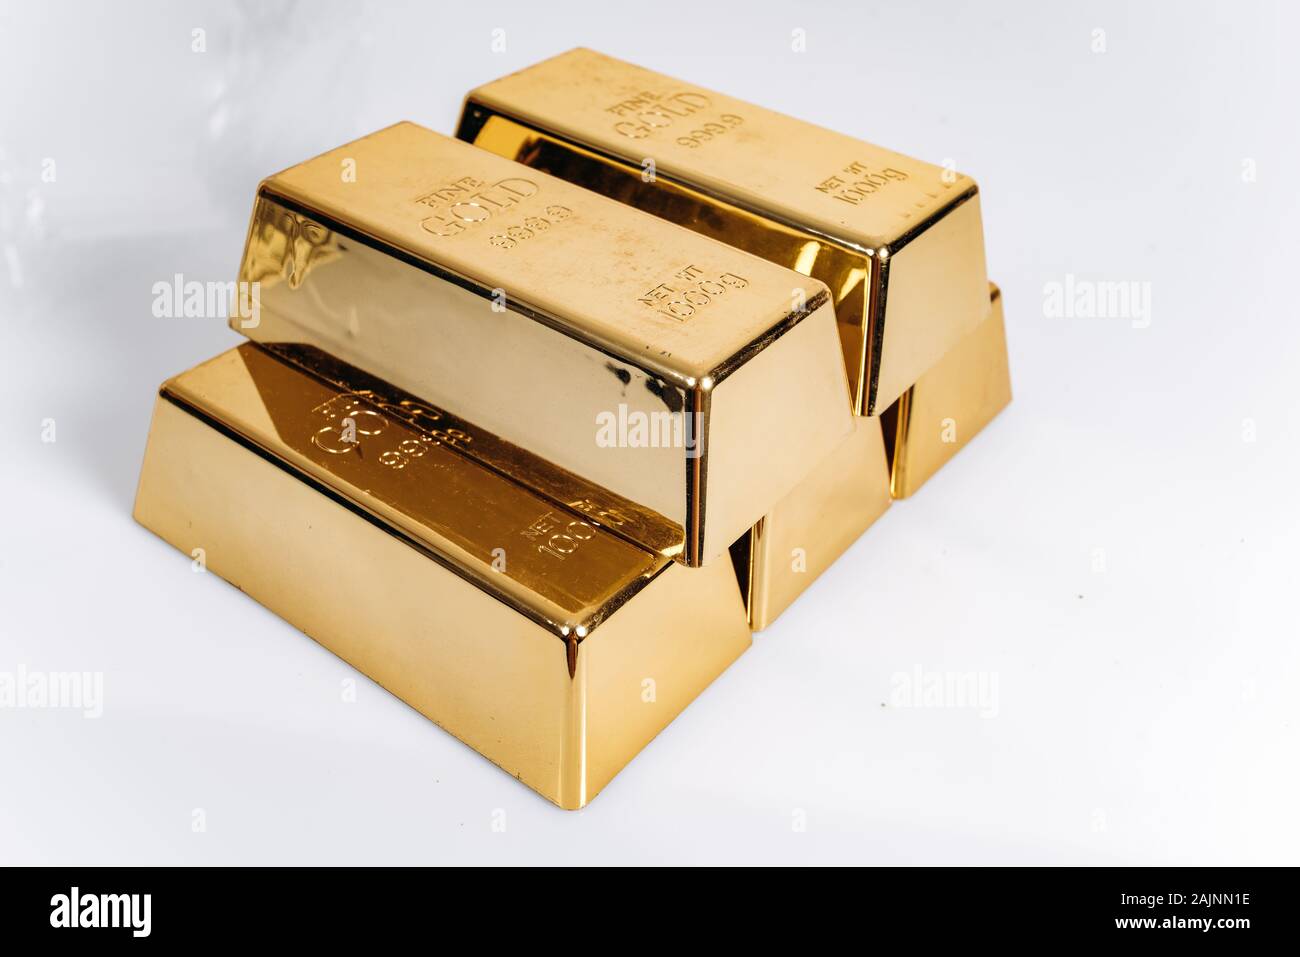 Cinq barres d'or. Barres d'or de 1 kg ou 1 000 grammes. Barres d'or sont sur la table. Banque D'Images